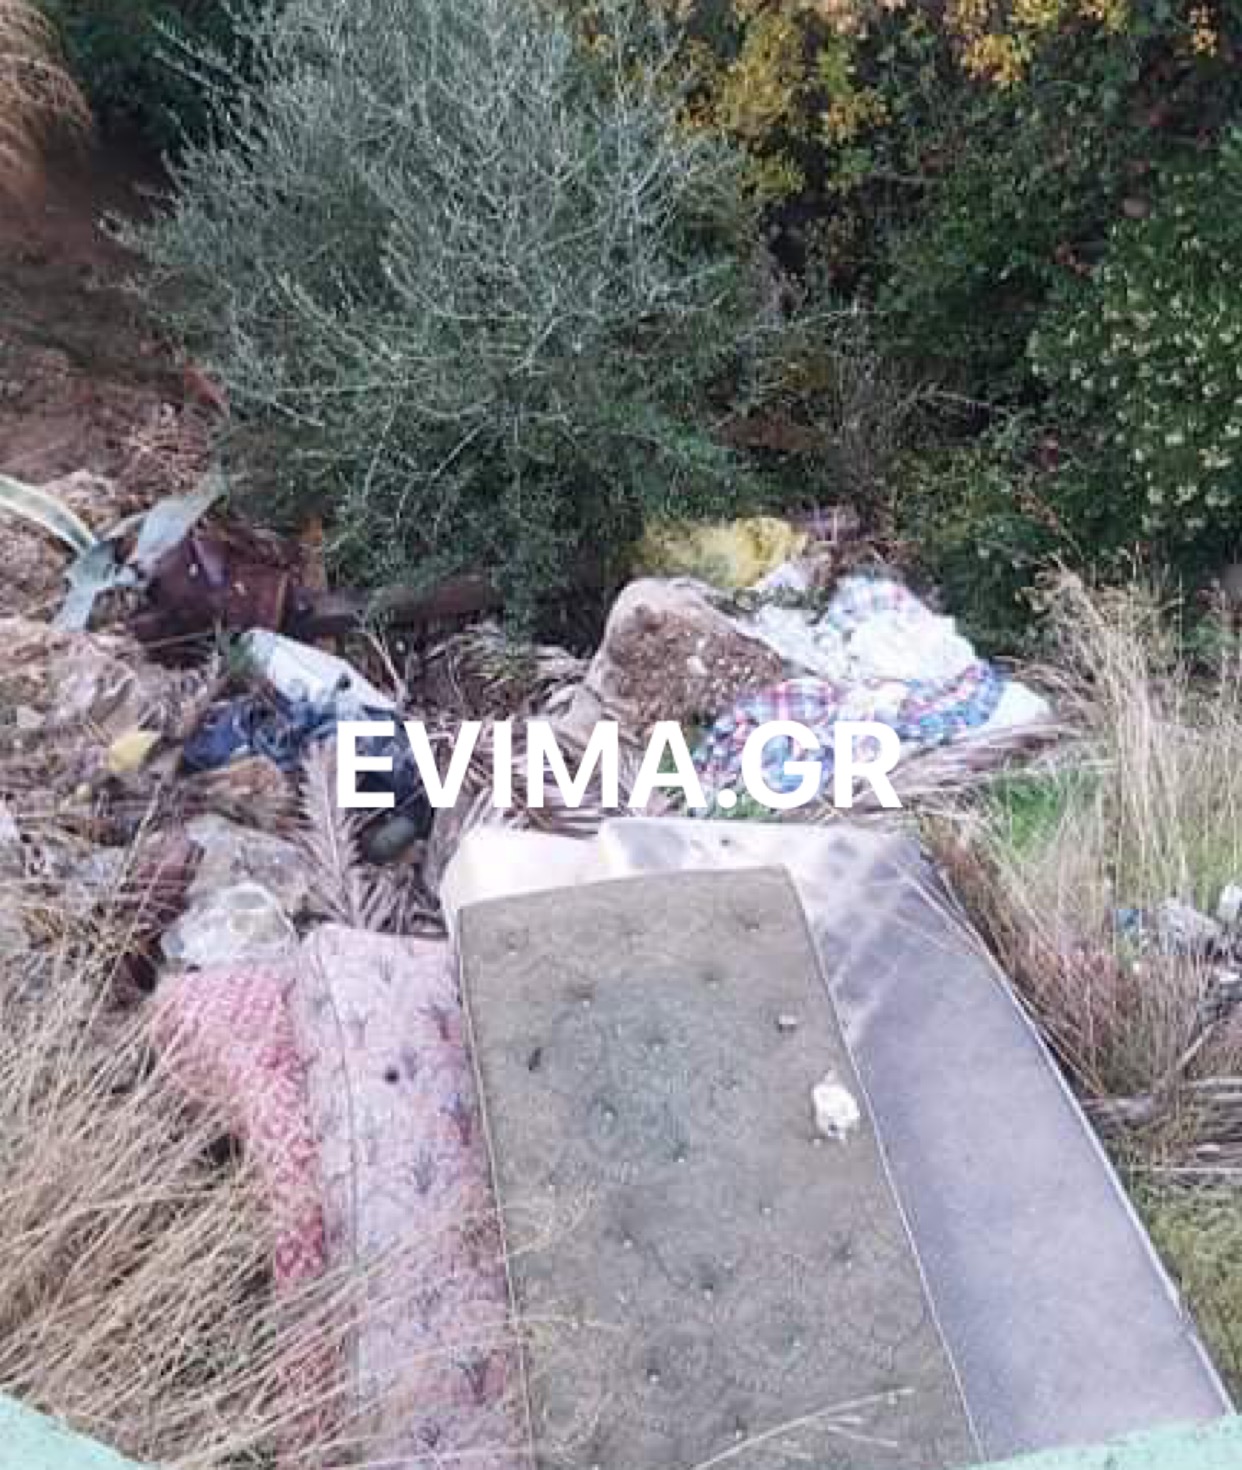 Εύβοια Τραγικό: Εστία μόλυνσης τα πεταμένα σκουπίδια στην άκρη του δρόμου στην Δημοτική Ενότητα Αυλώνος – Αποκλειστικές εικόνες